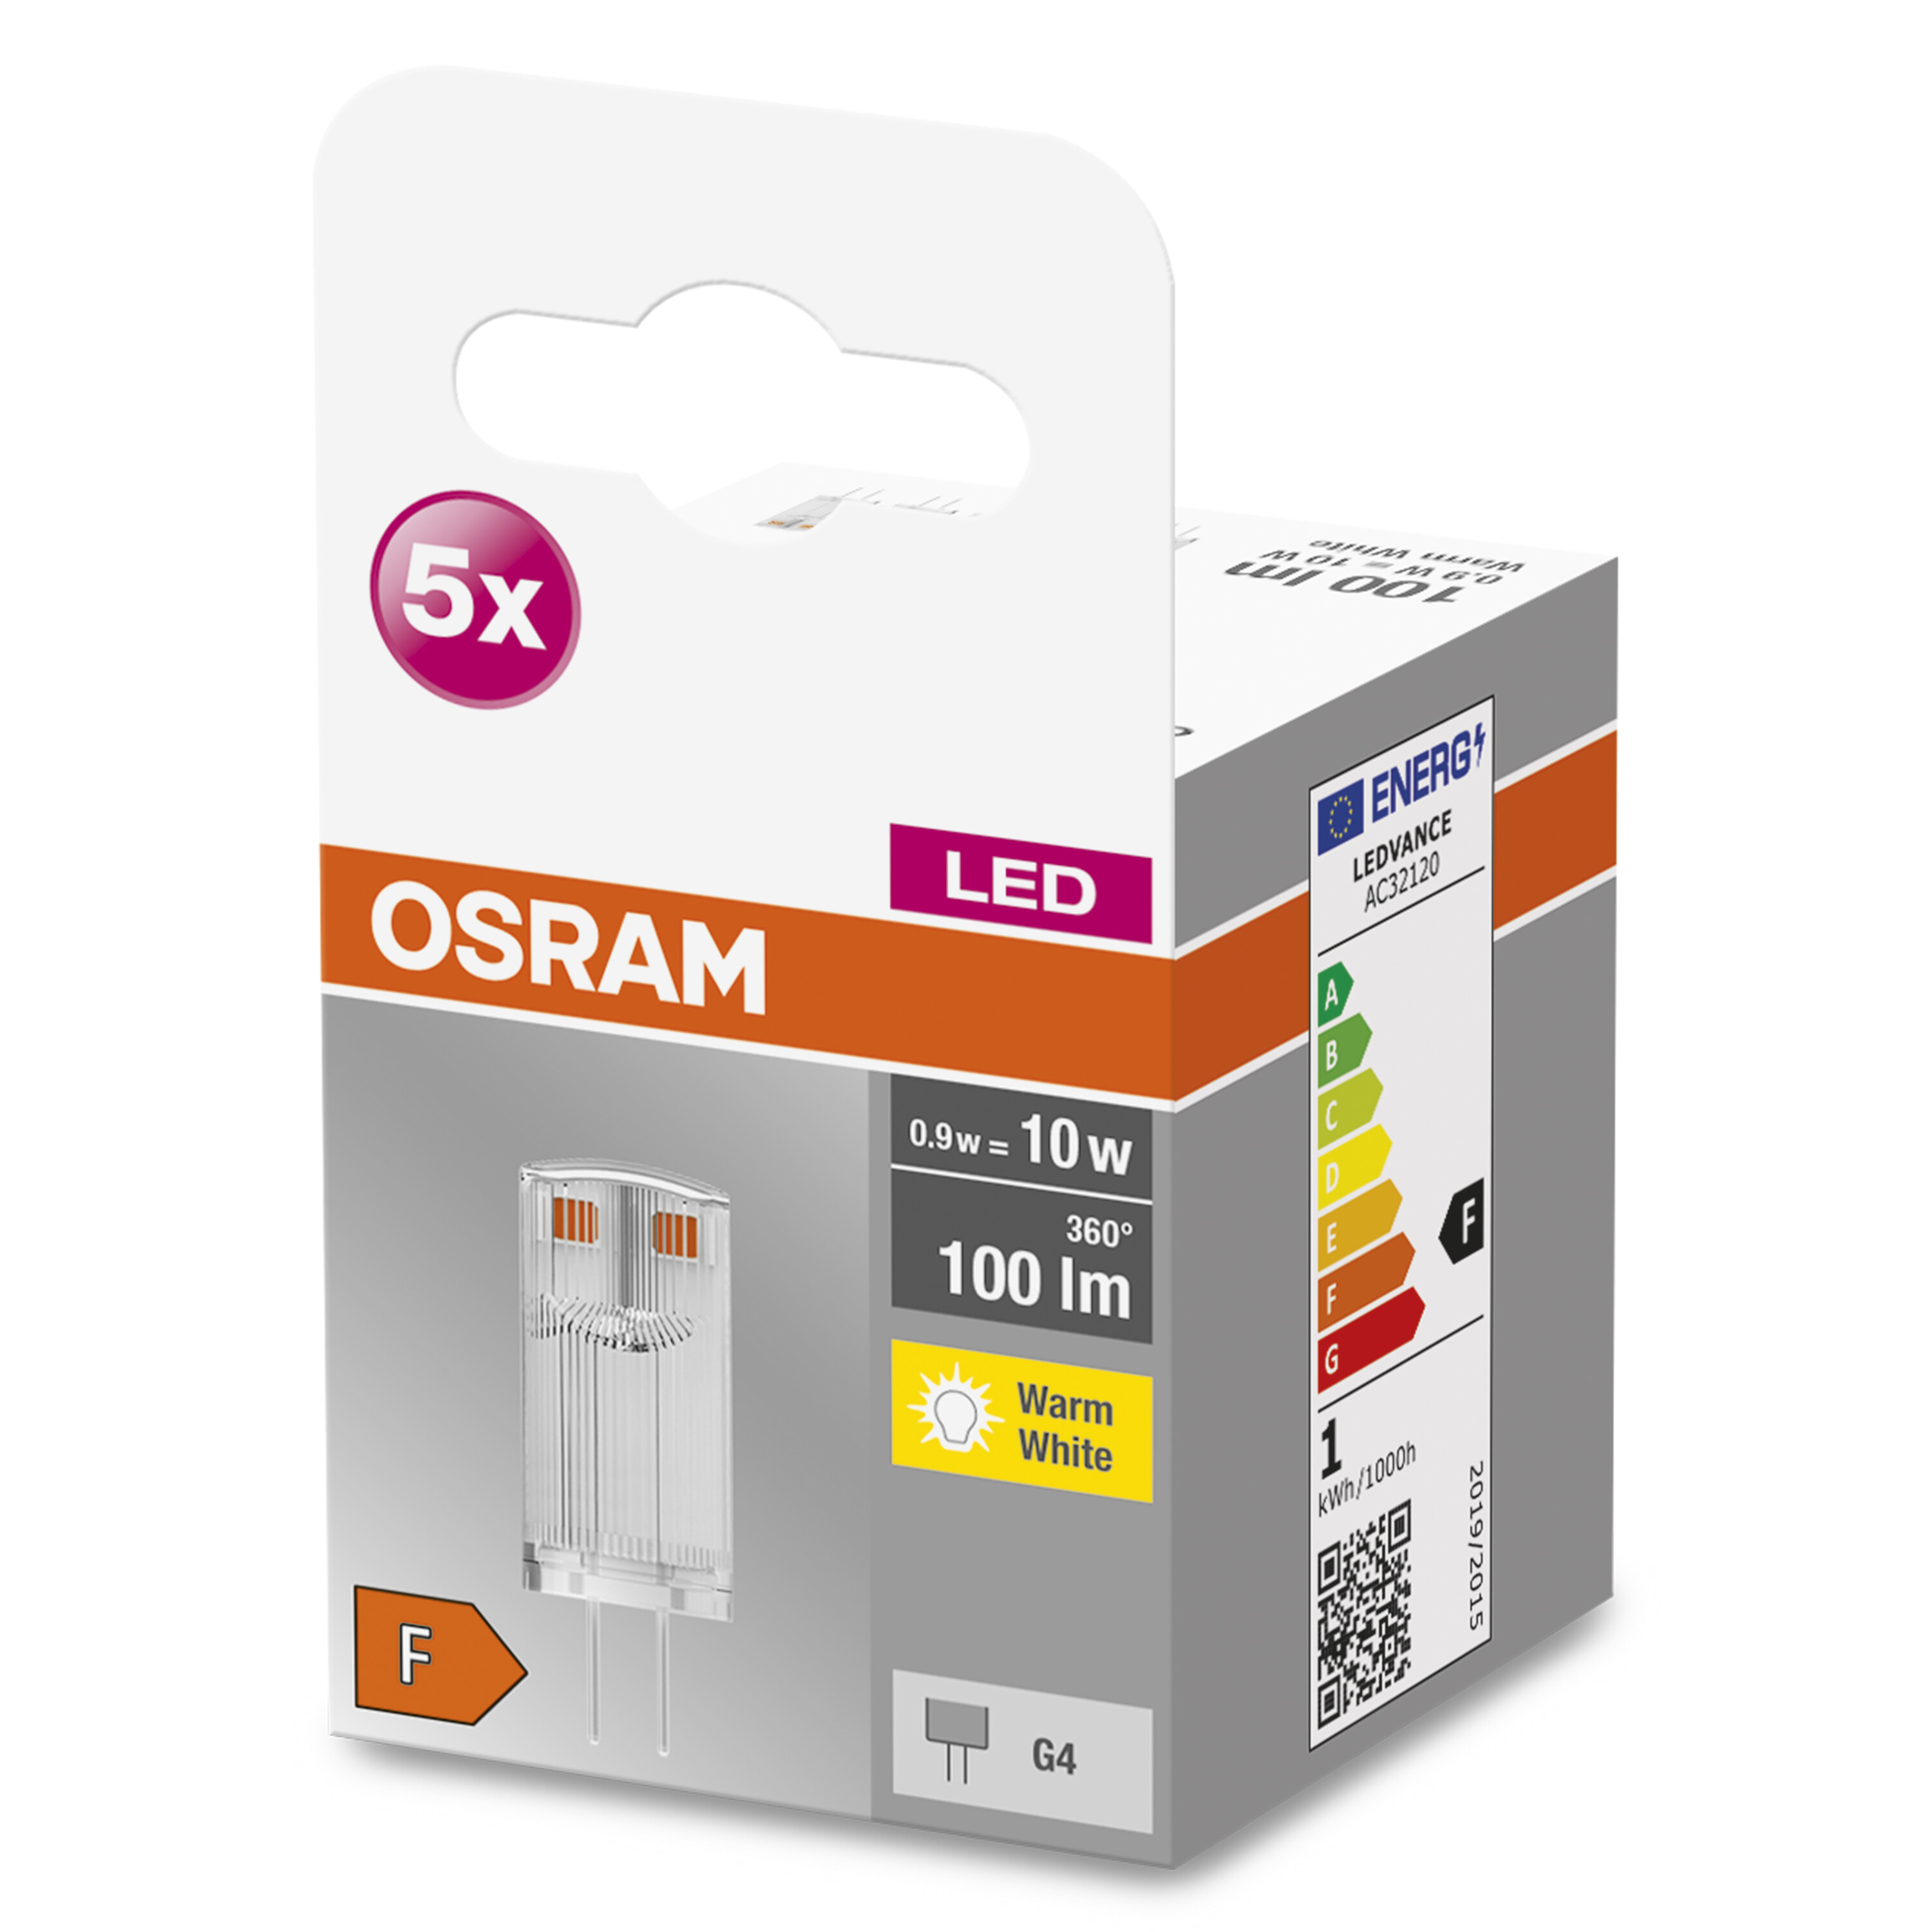 LED G4 BASE Warmweiß 12 OSRAM  100 Lumen Lampe V LED PIN